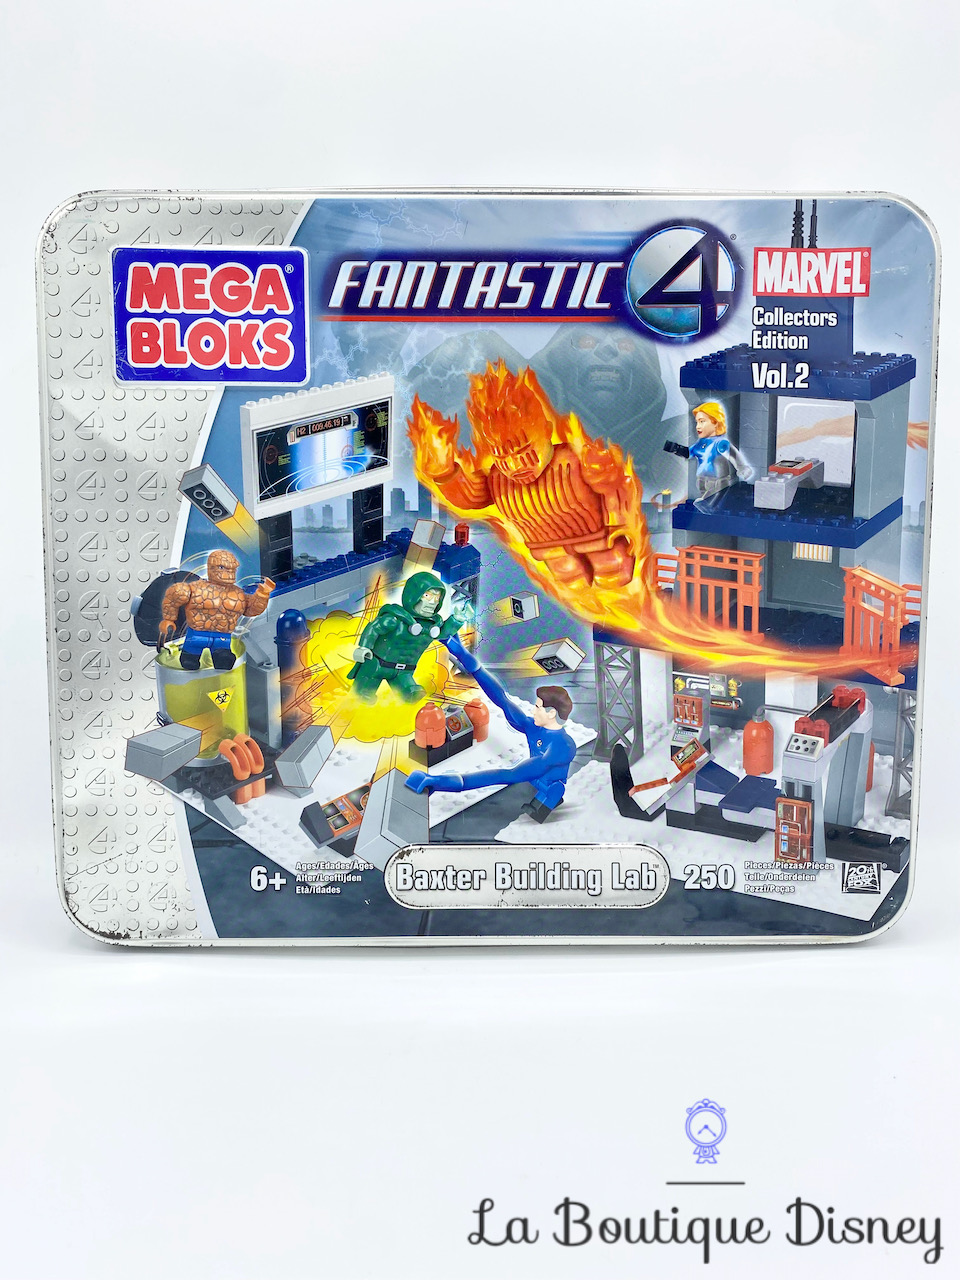 jouet-lego-megabloks-4-fantastic-marvel-baxter-building-lab-collectors-edition-6